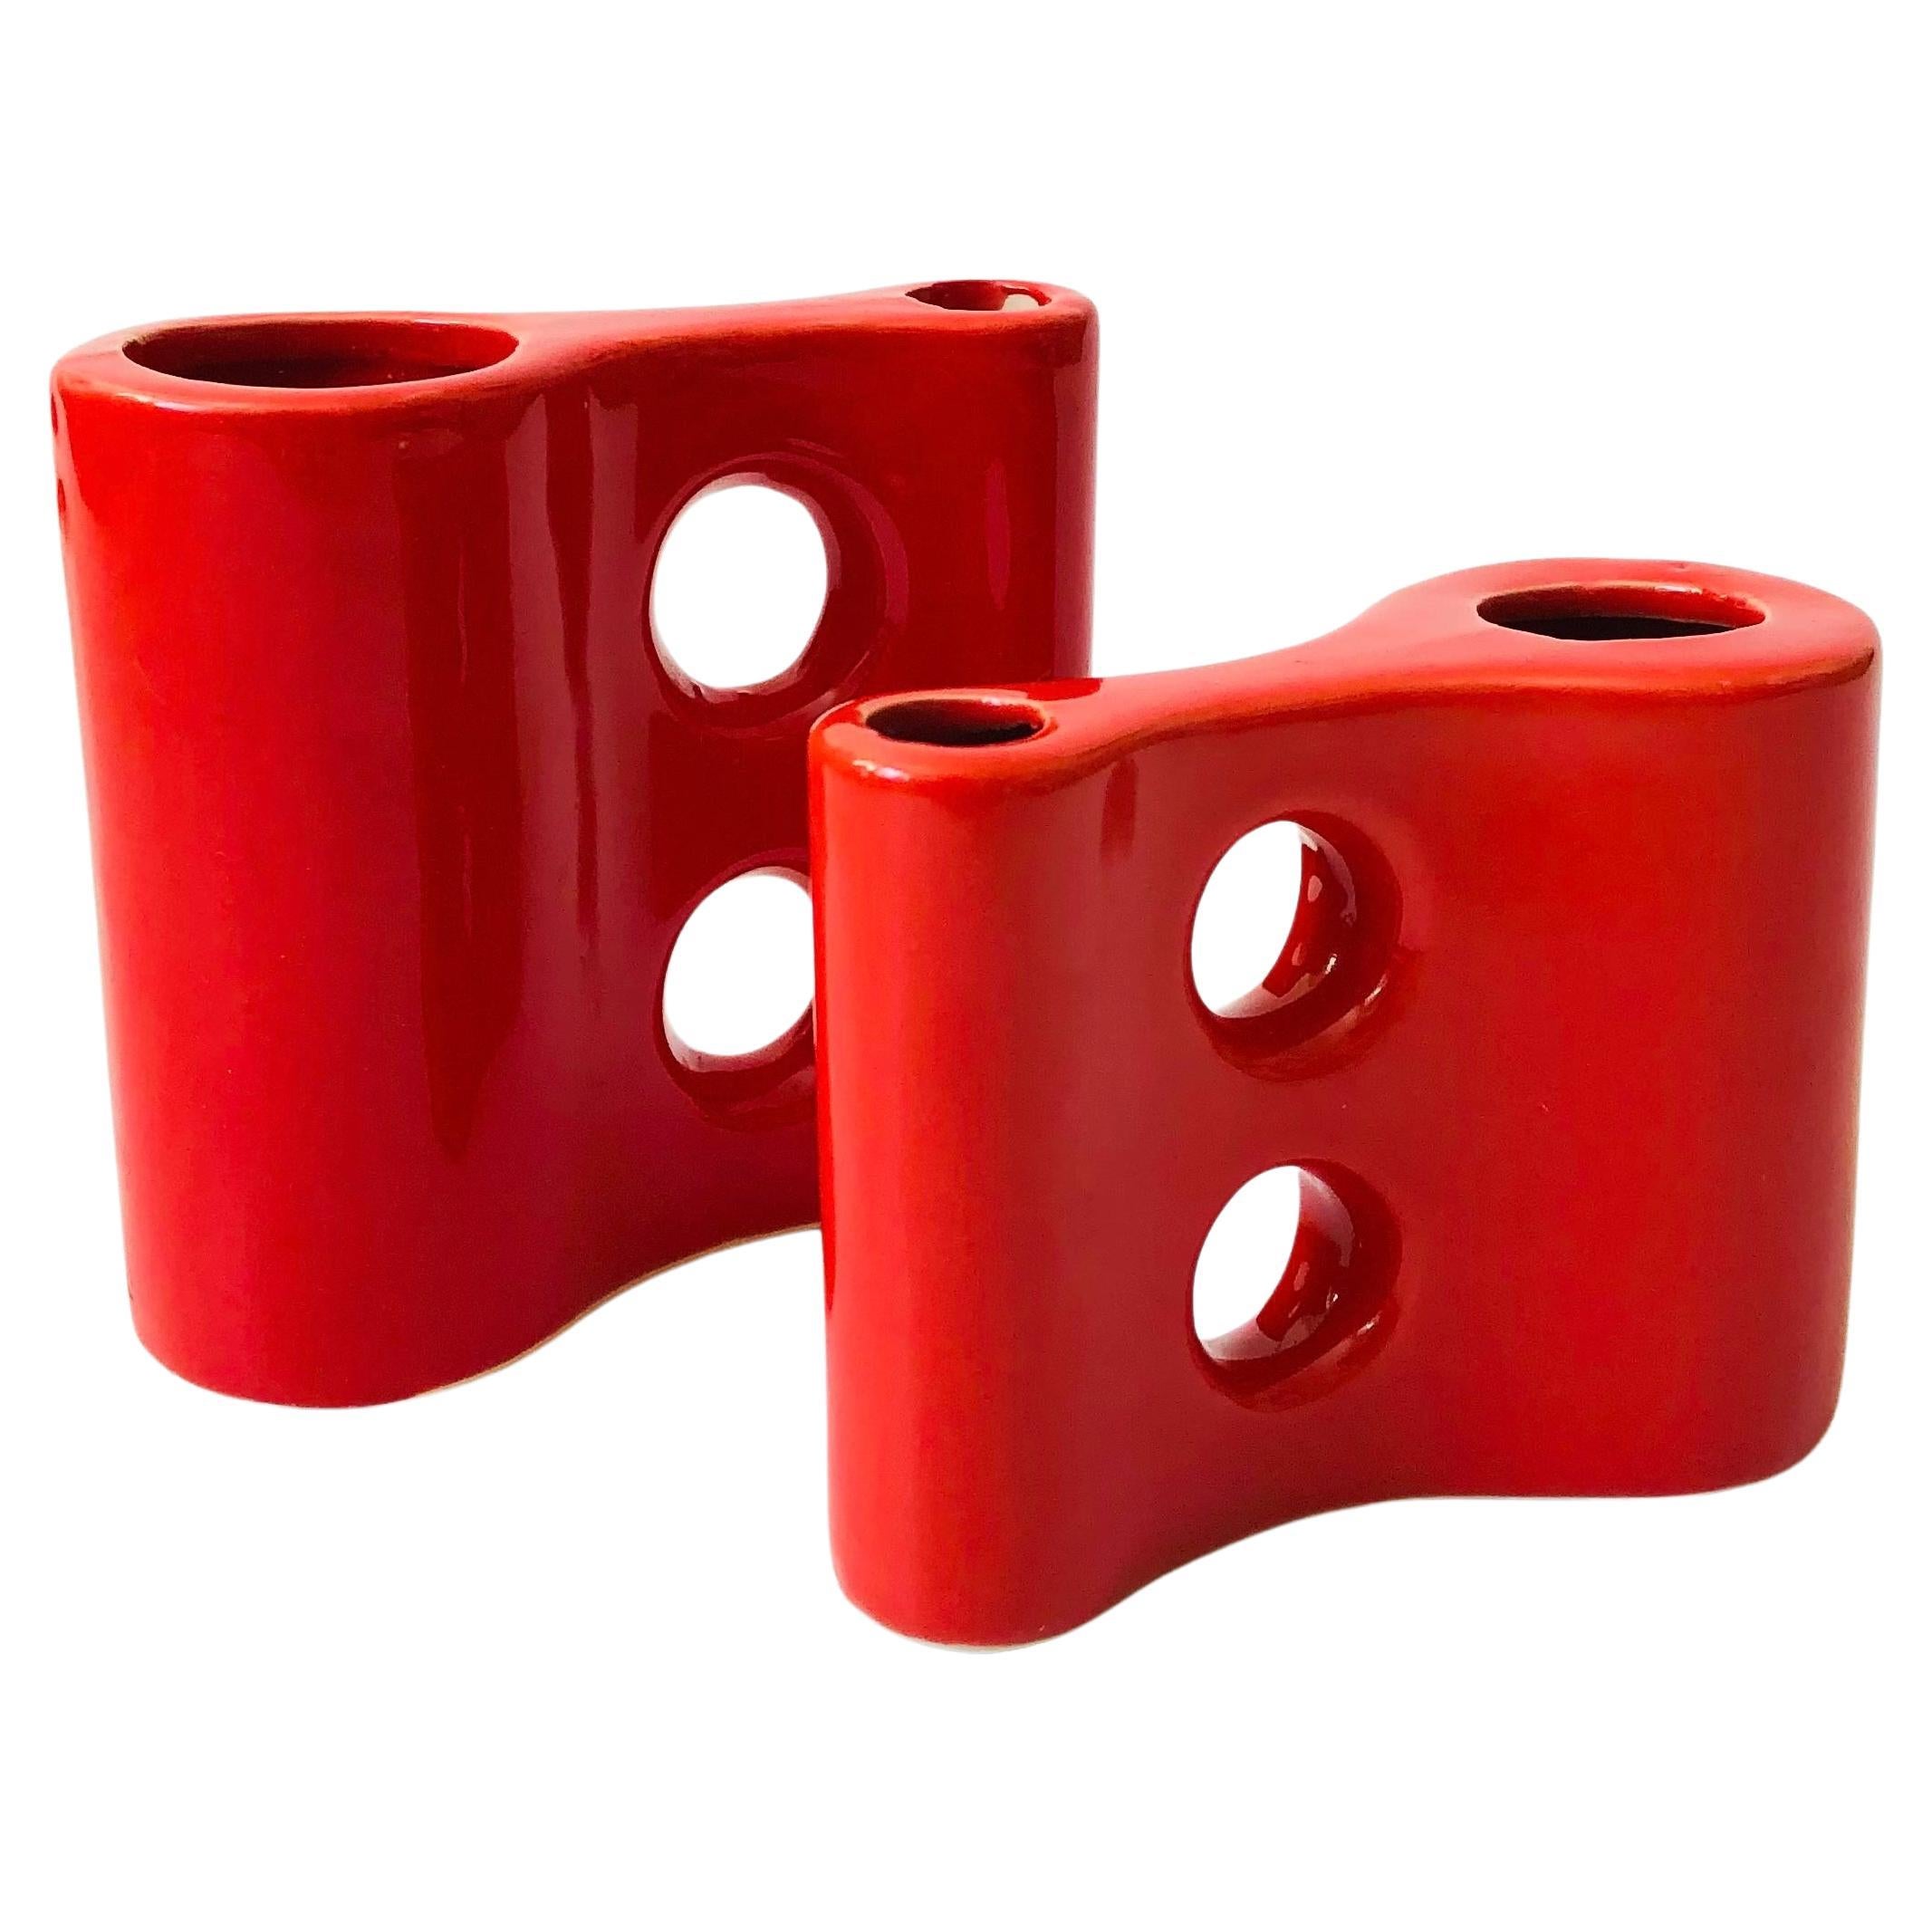 Sculptural Red Ceramic Vases - Set of 2 For Sale